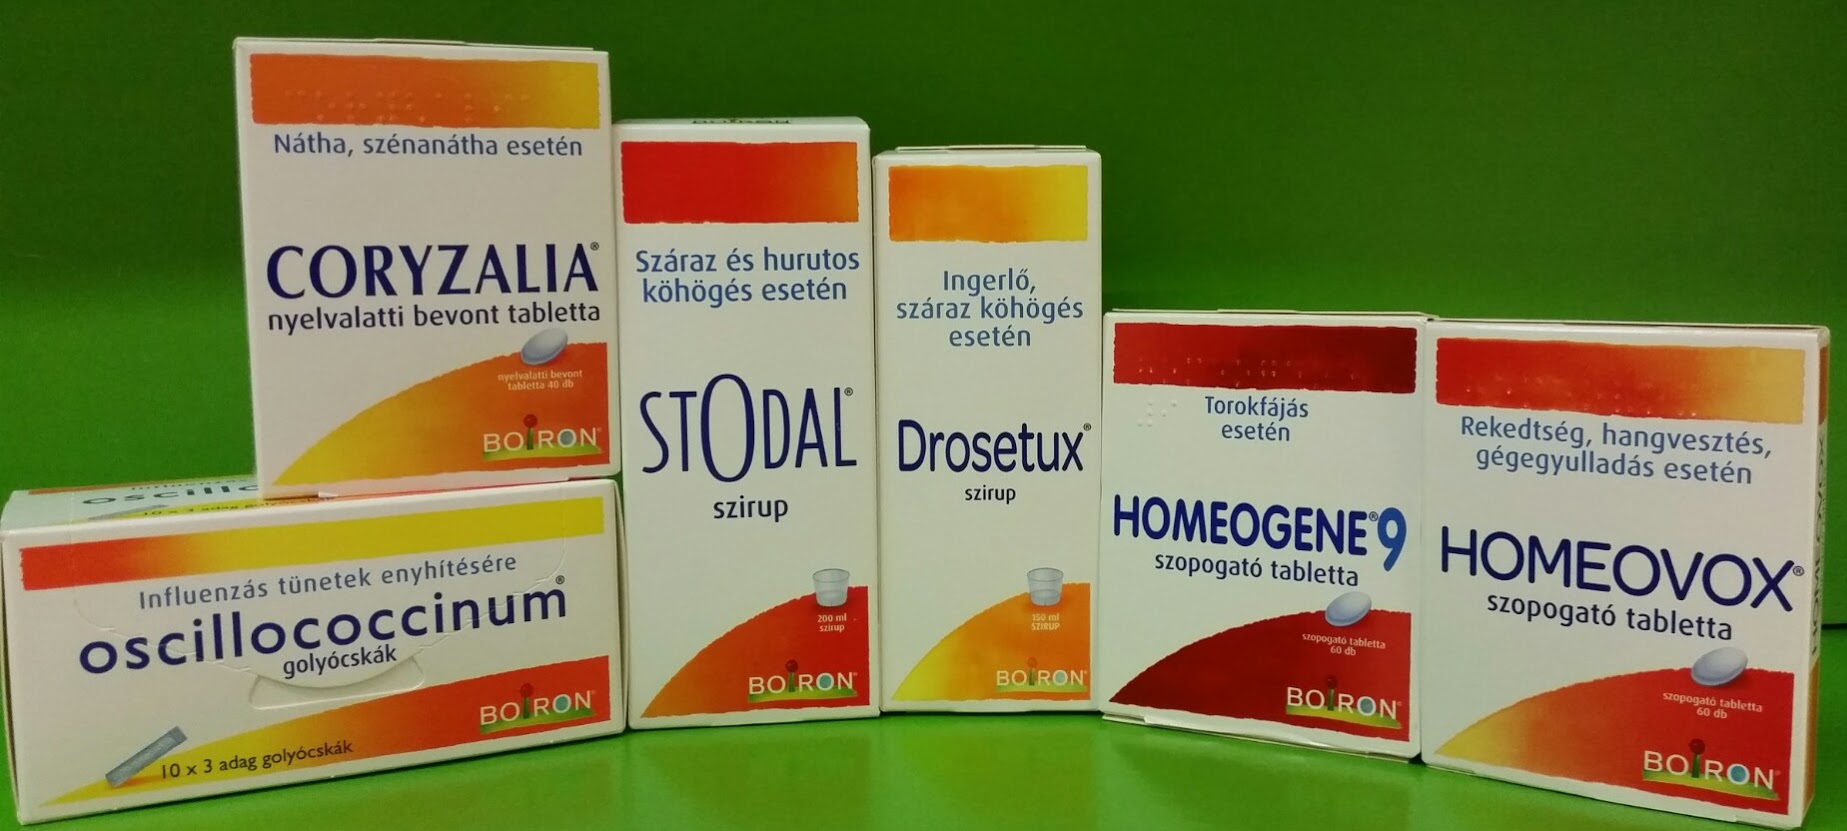 Így készülnek a homeopátiás gyógyszerek - EgészségKalauz